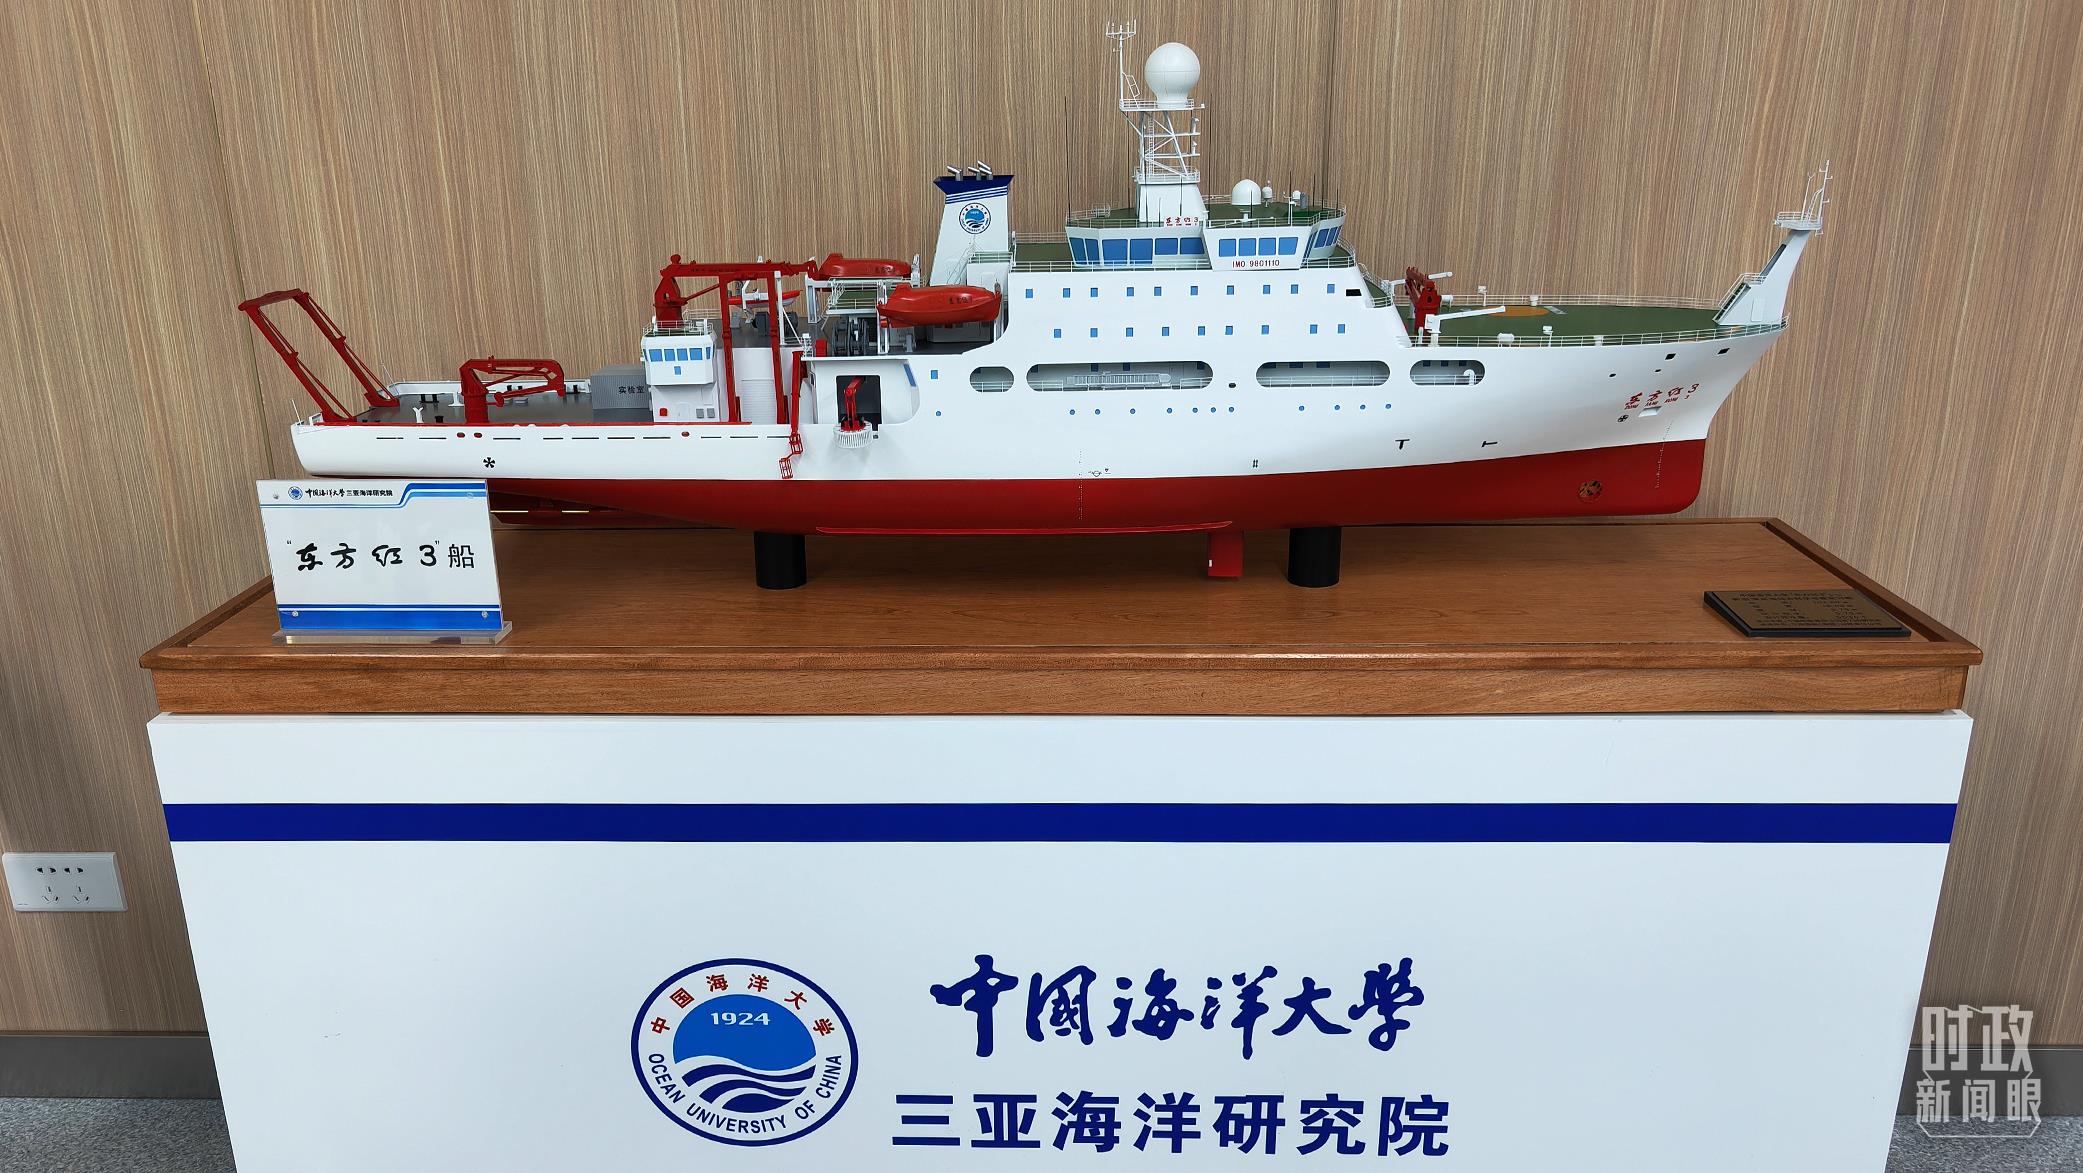 三亚海洋研究院展示的“东方红3”船模型。（总台央视记者马超拍摄）